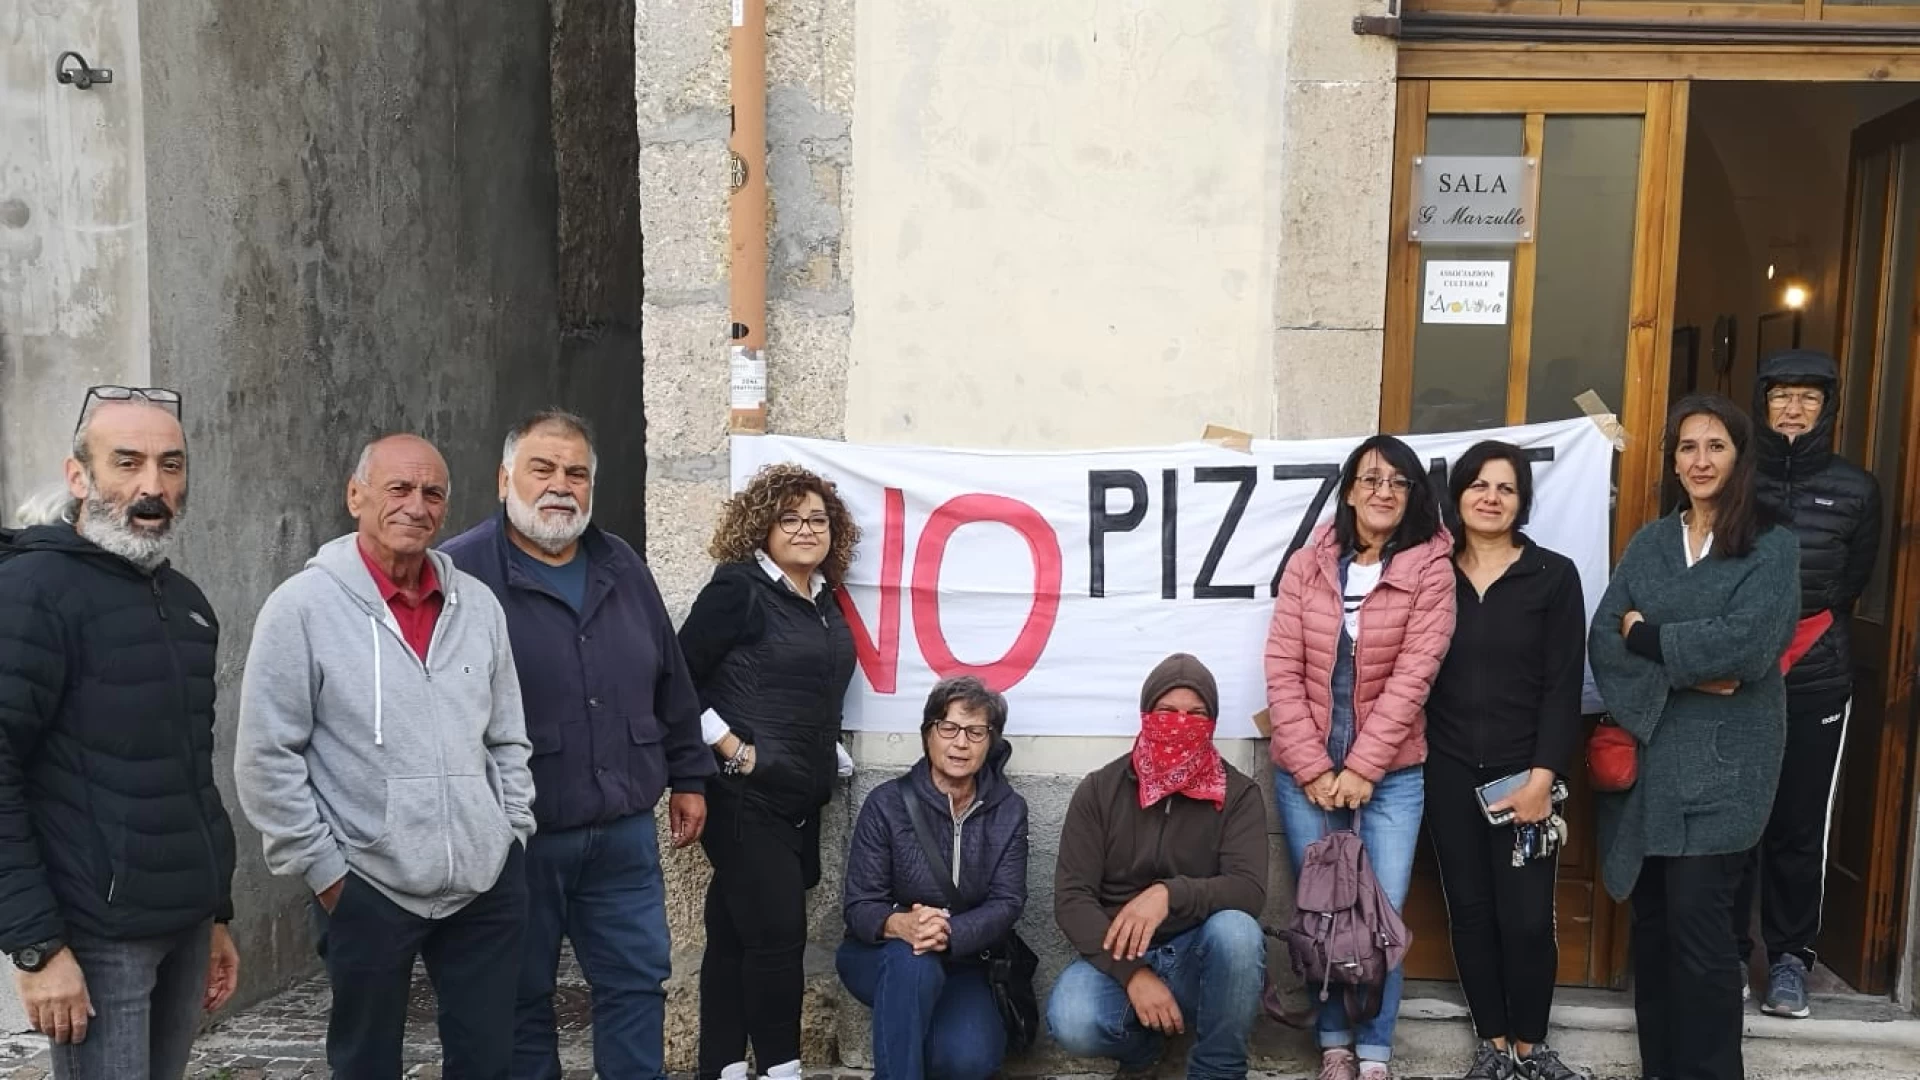 Pizzone II, Enel incontra gli amministratori e rappresentanti istituzionali questa mattina a Castel San Vincenzo. Cittadini protestano e nasce un comitato di coordinamento.